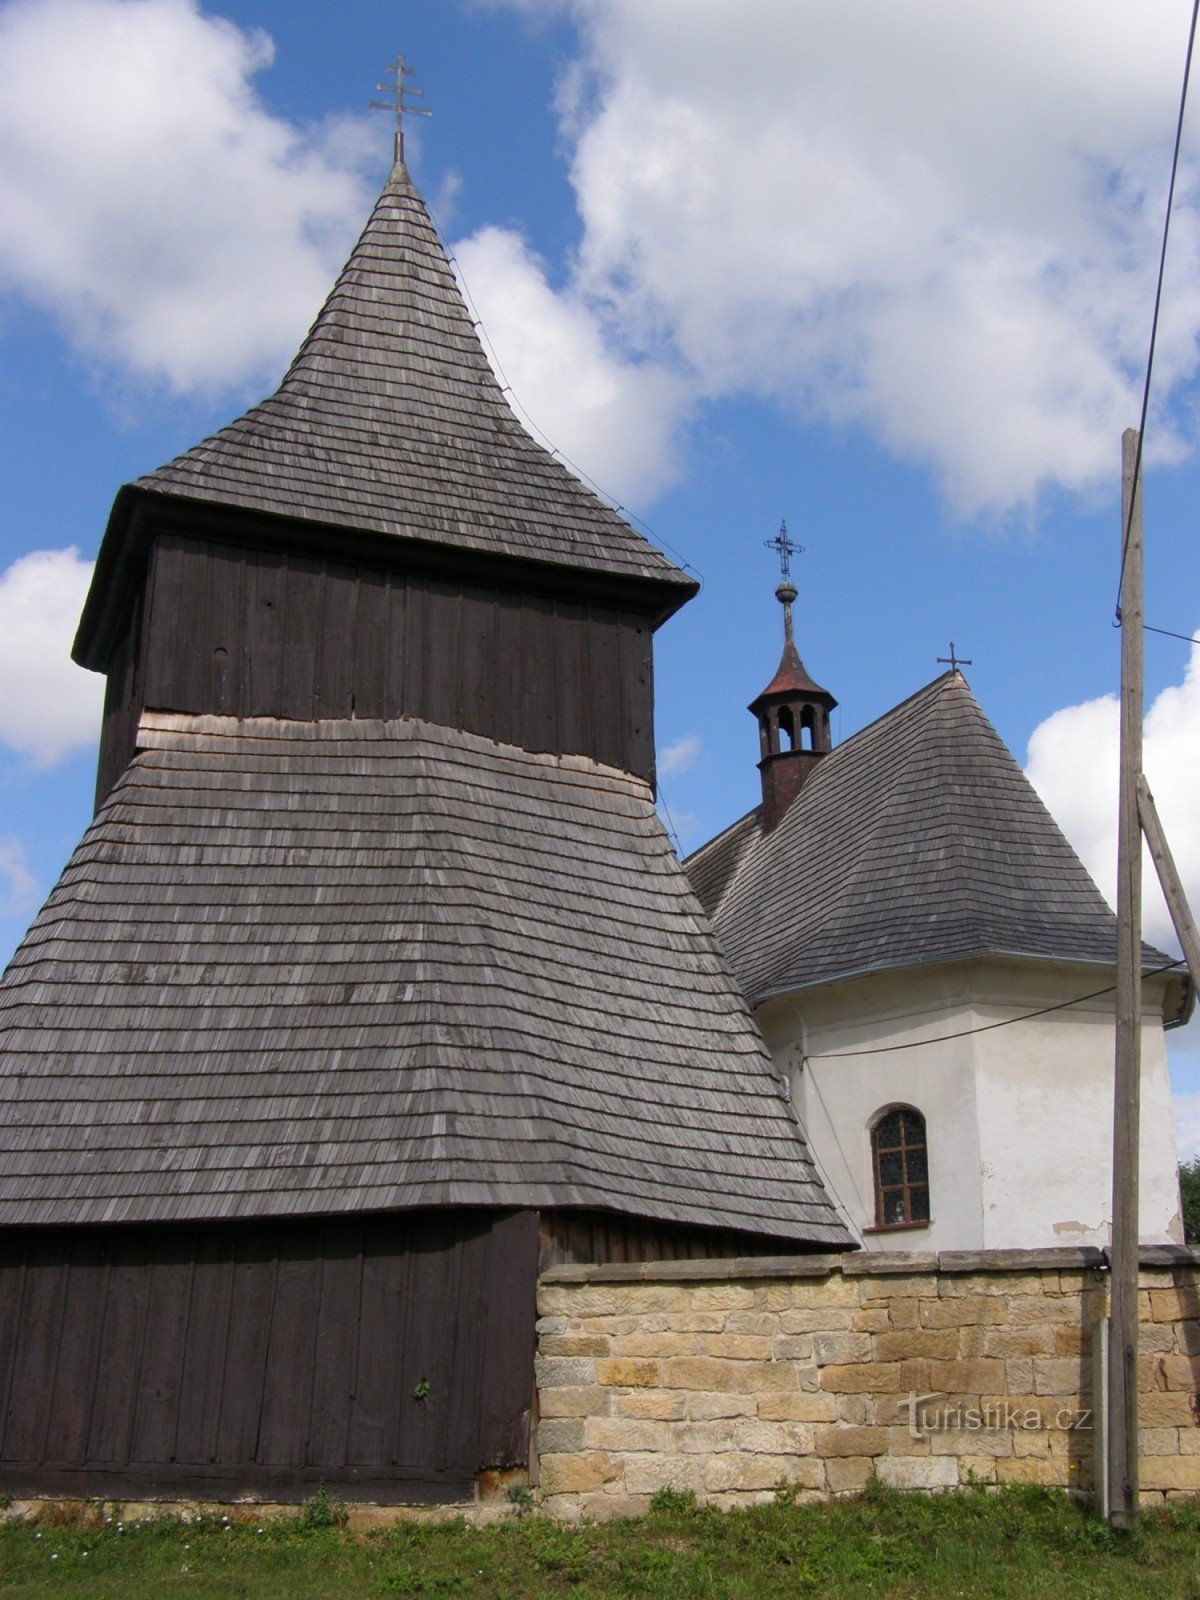 Высочаны - деревянная церковь св. Рынки с деревянной колокольней